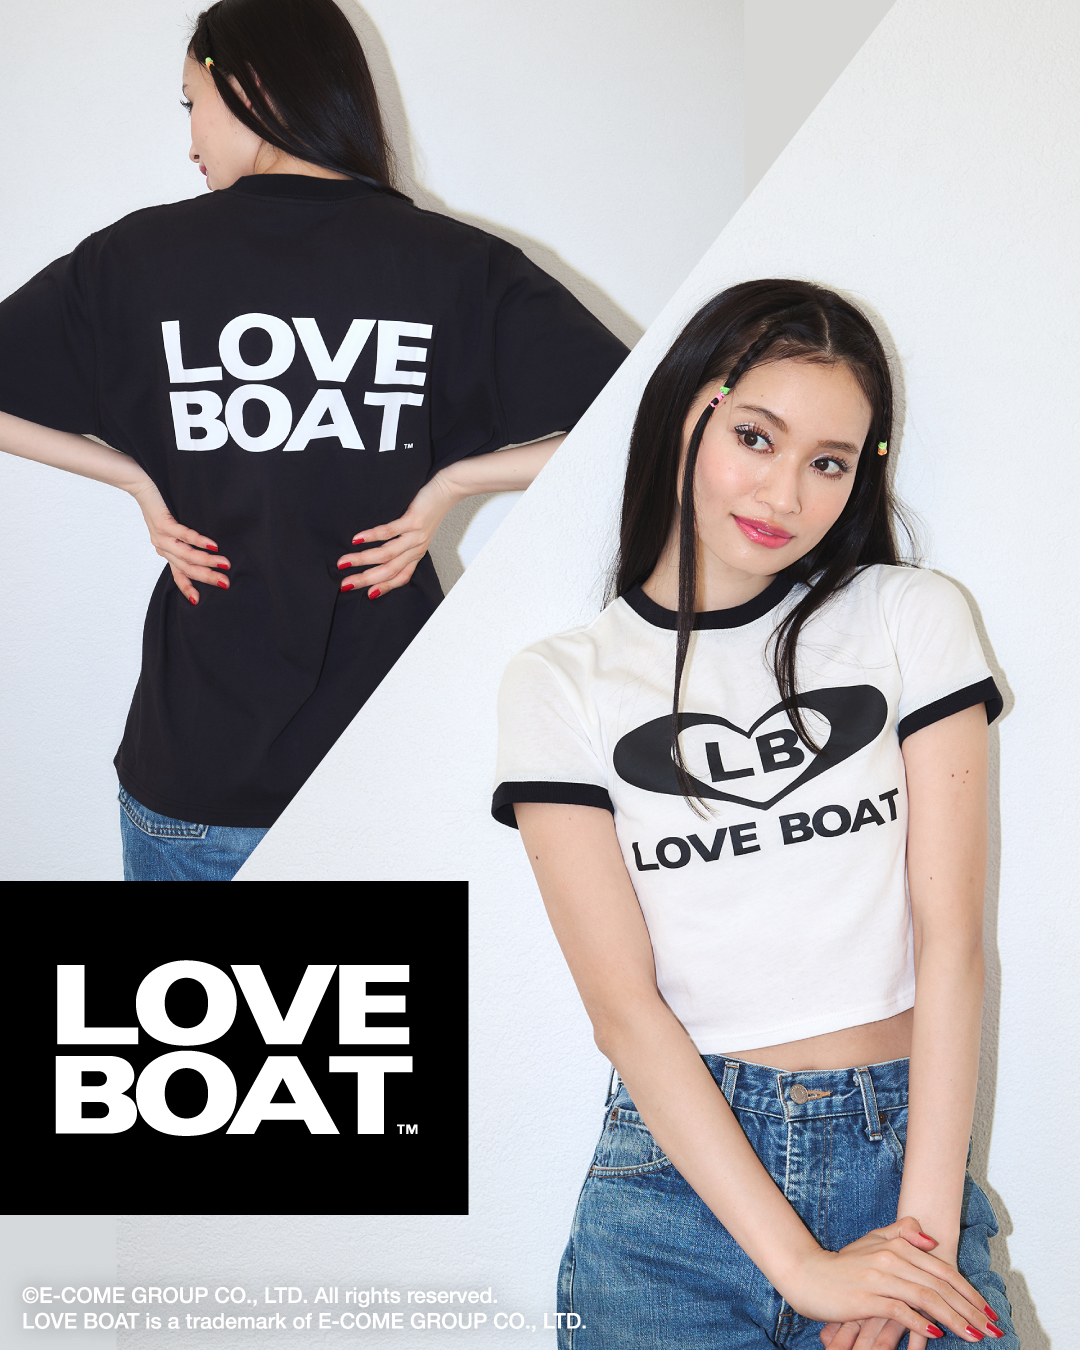 渋谷ギャルカルチャー”を代表するブランド「LOVE BOAT 」とストライプ